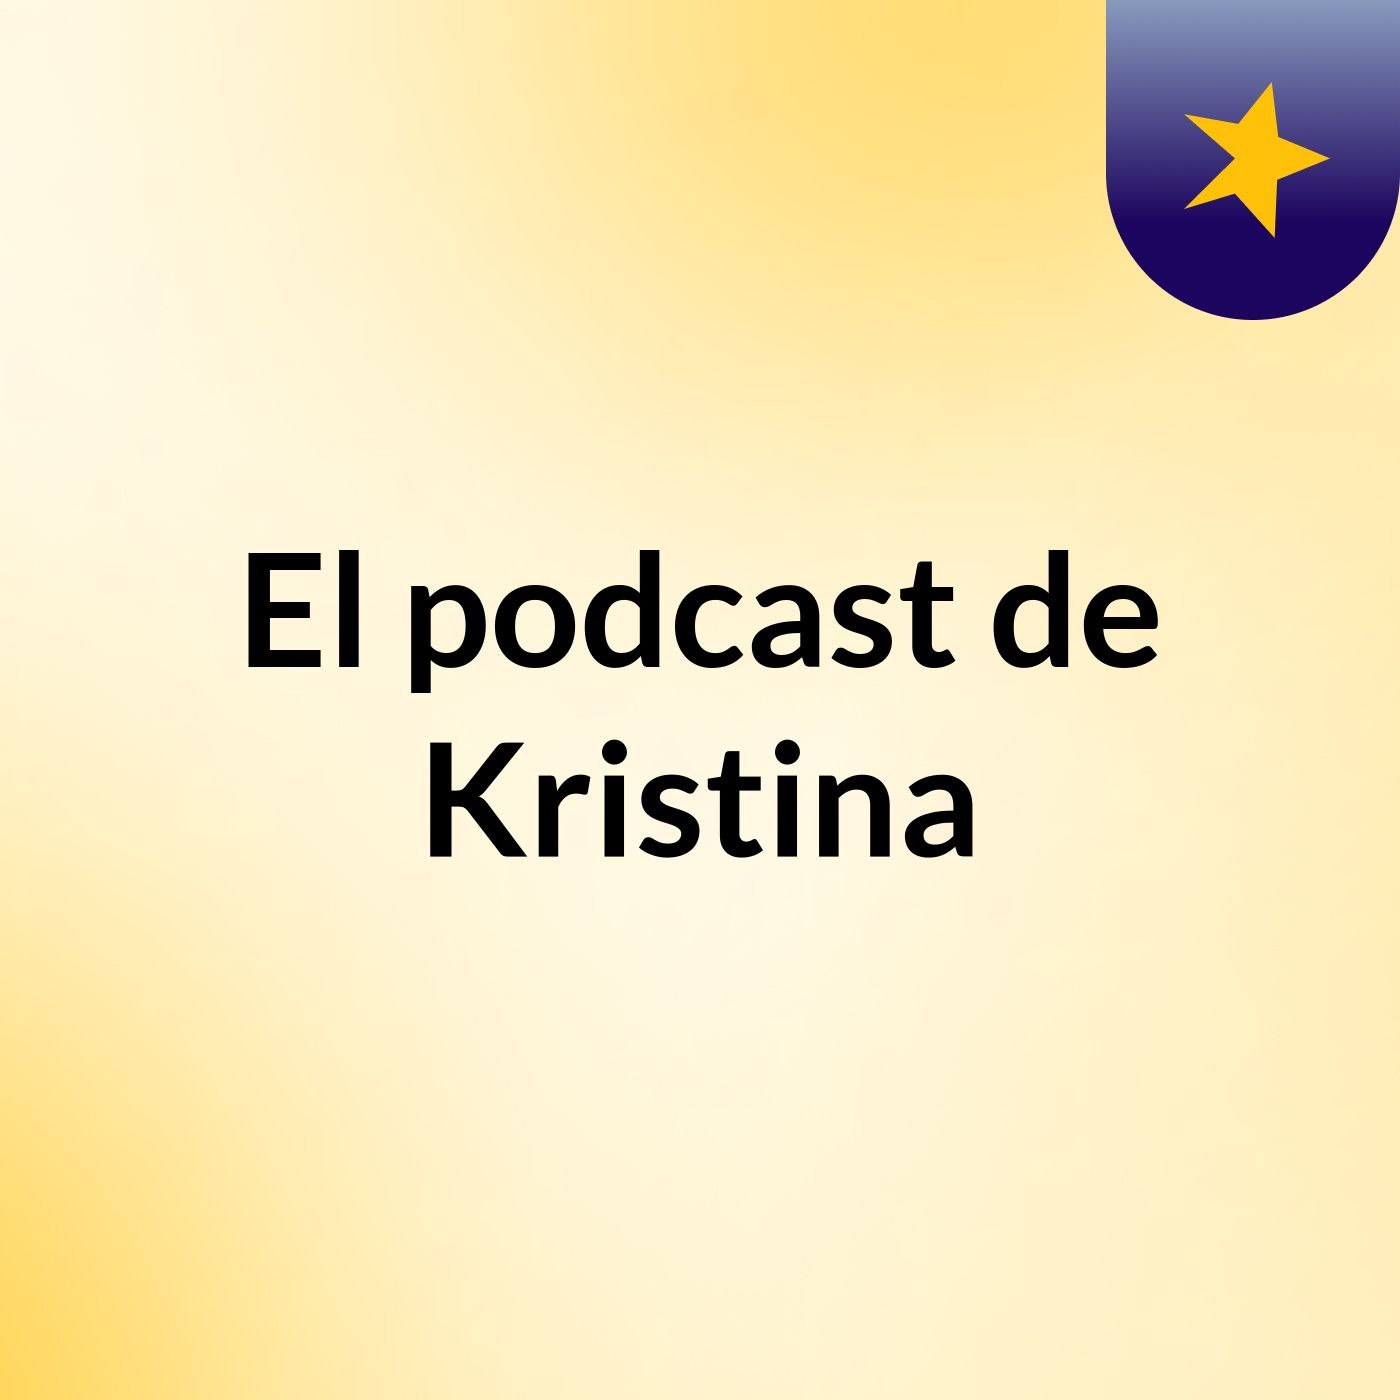 Episodio 6 - El podcast de Kristina